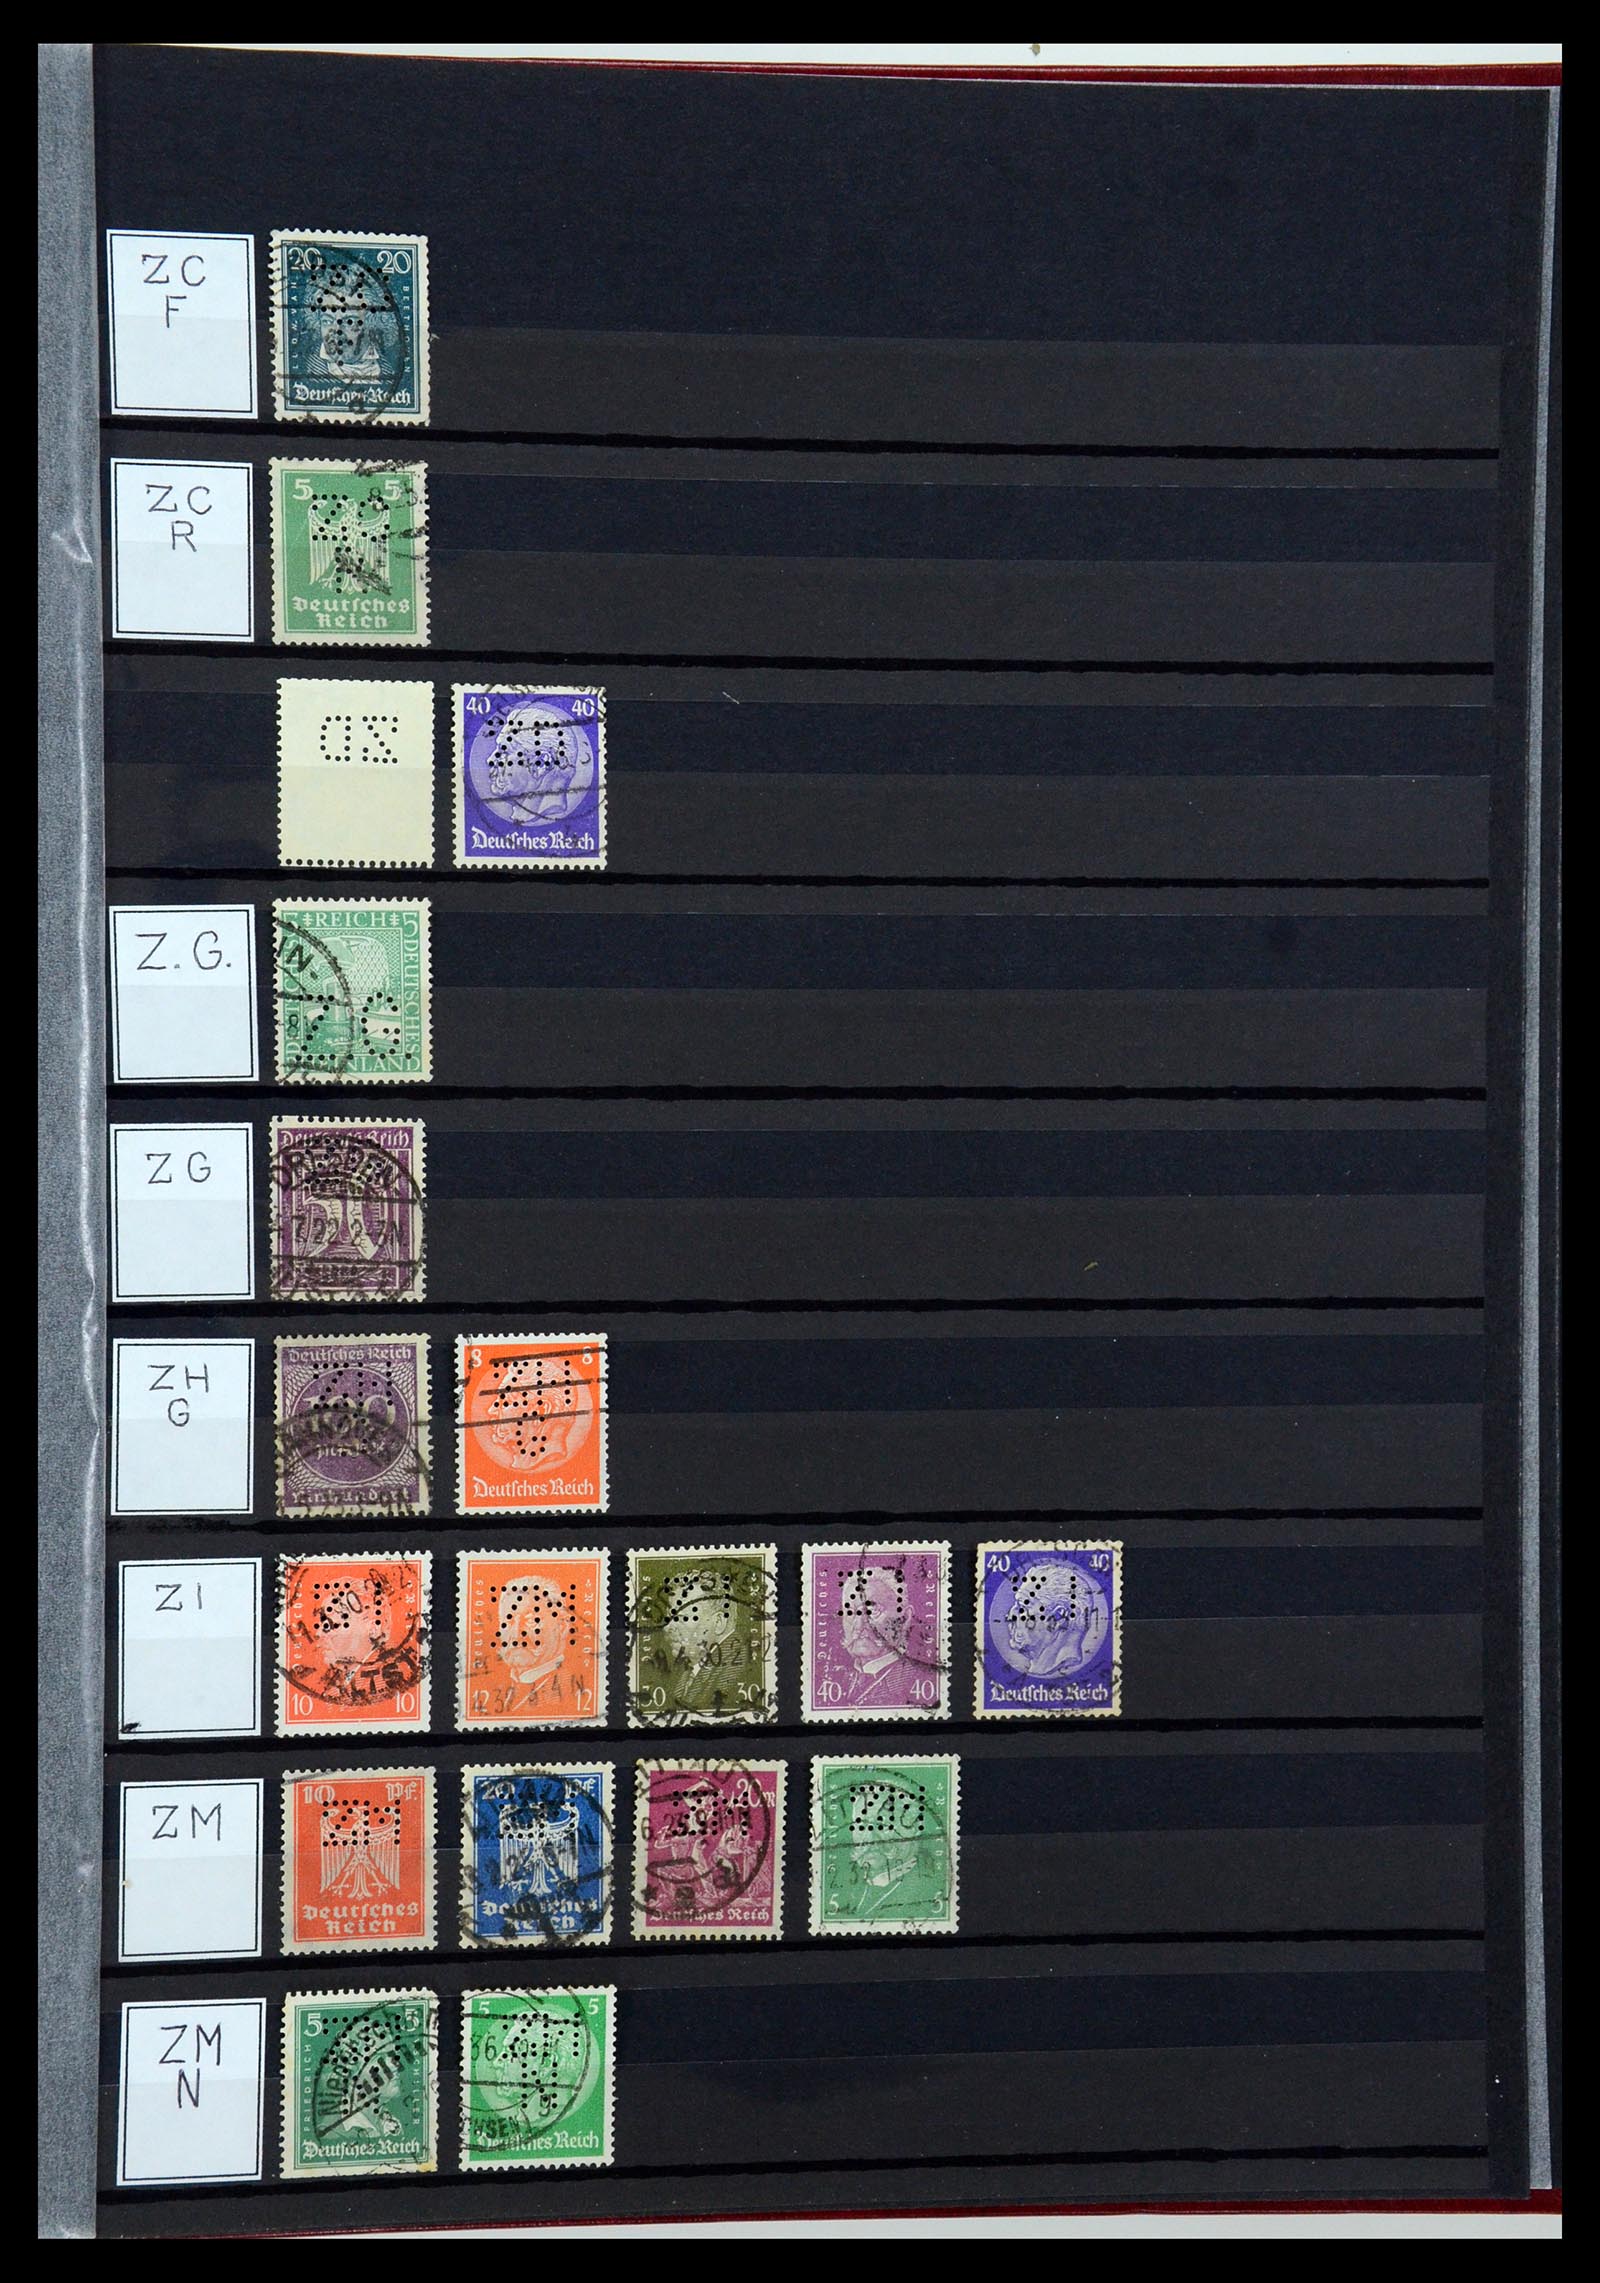 36405 348 - Stamp collection 36405 German Reich perfins 1880-1945.